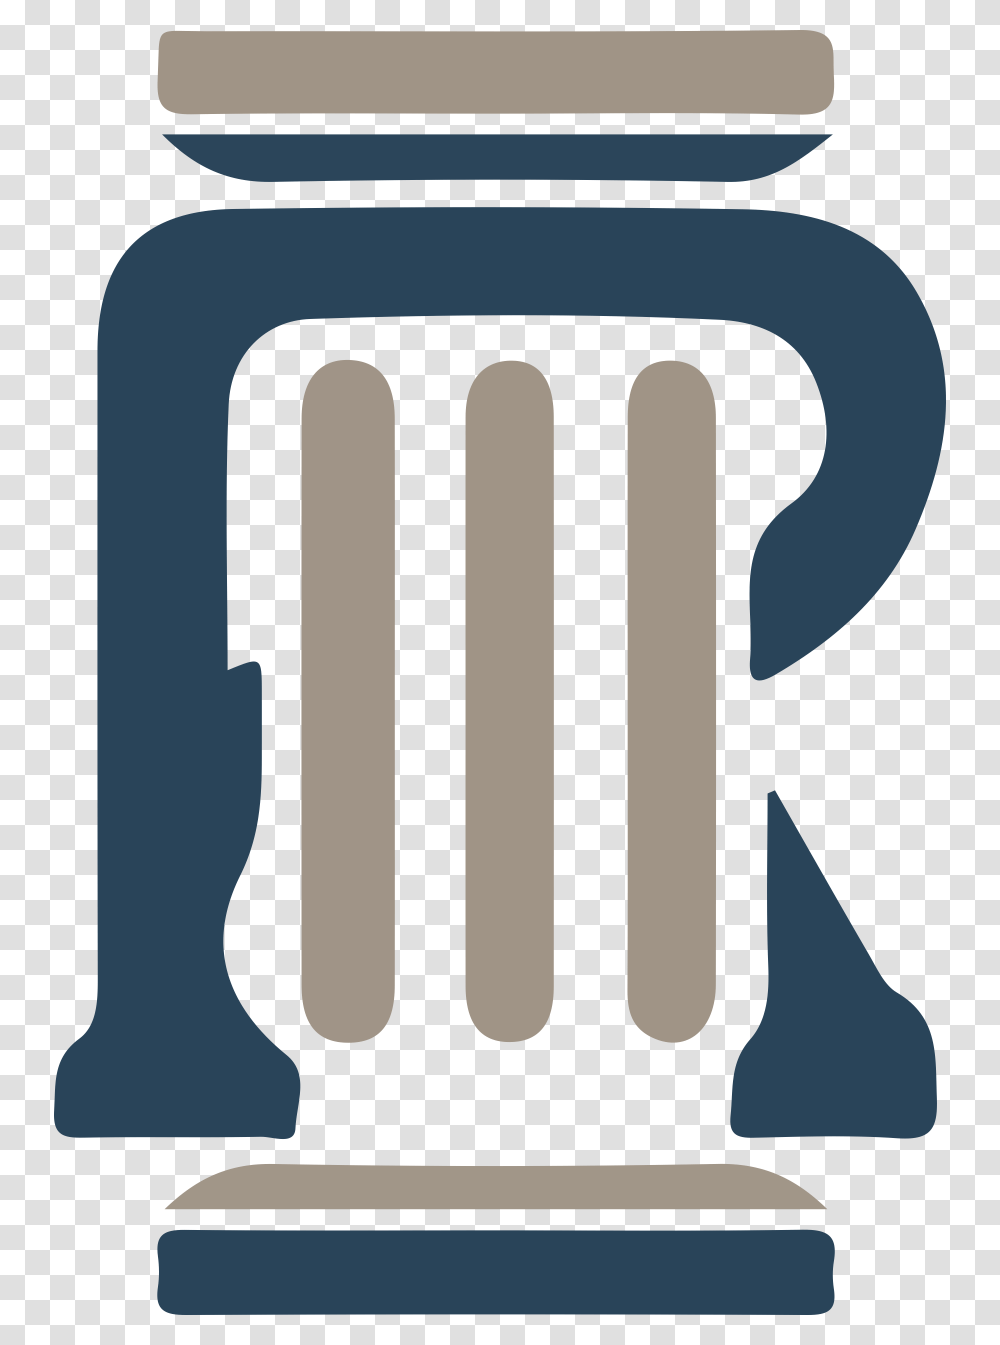 Right Pillar, Axe, Tool, Logo Transparent Png